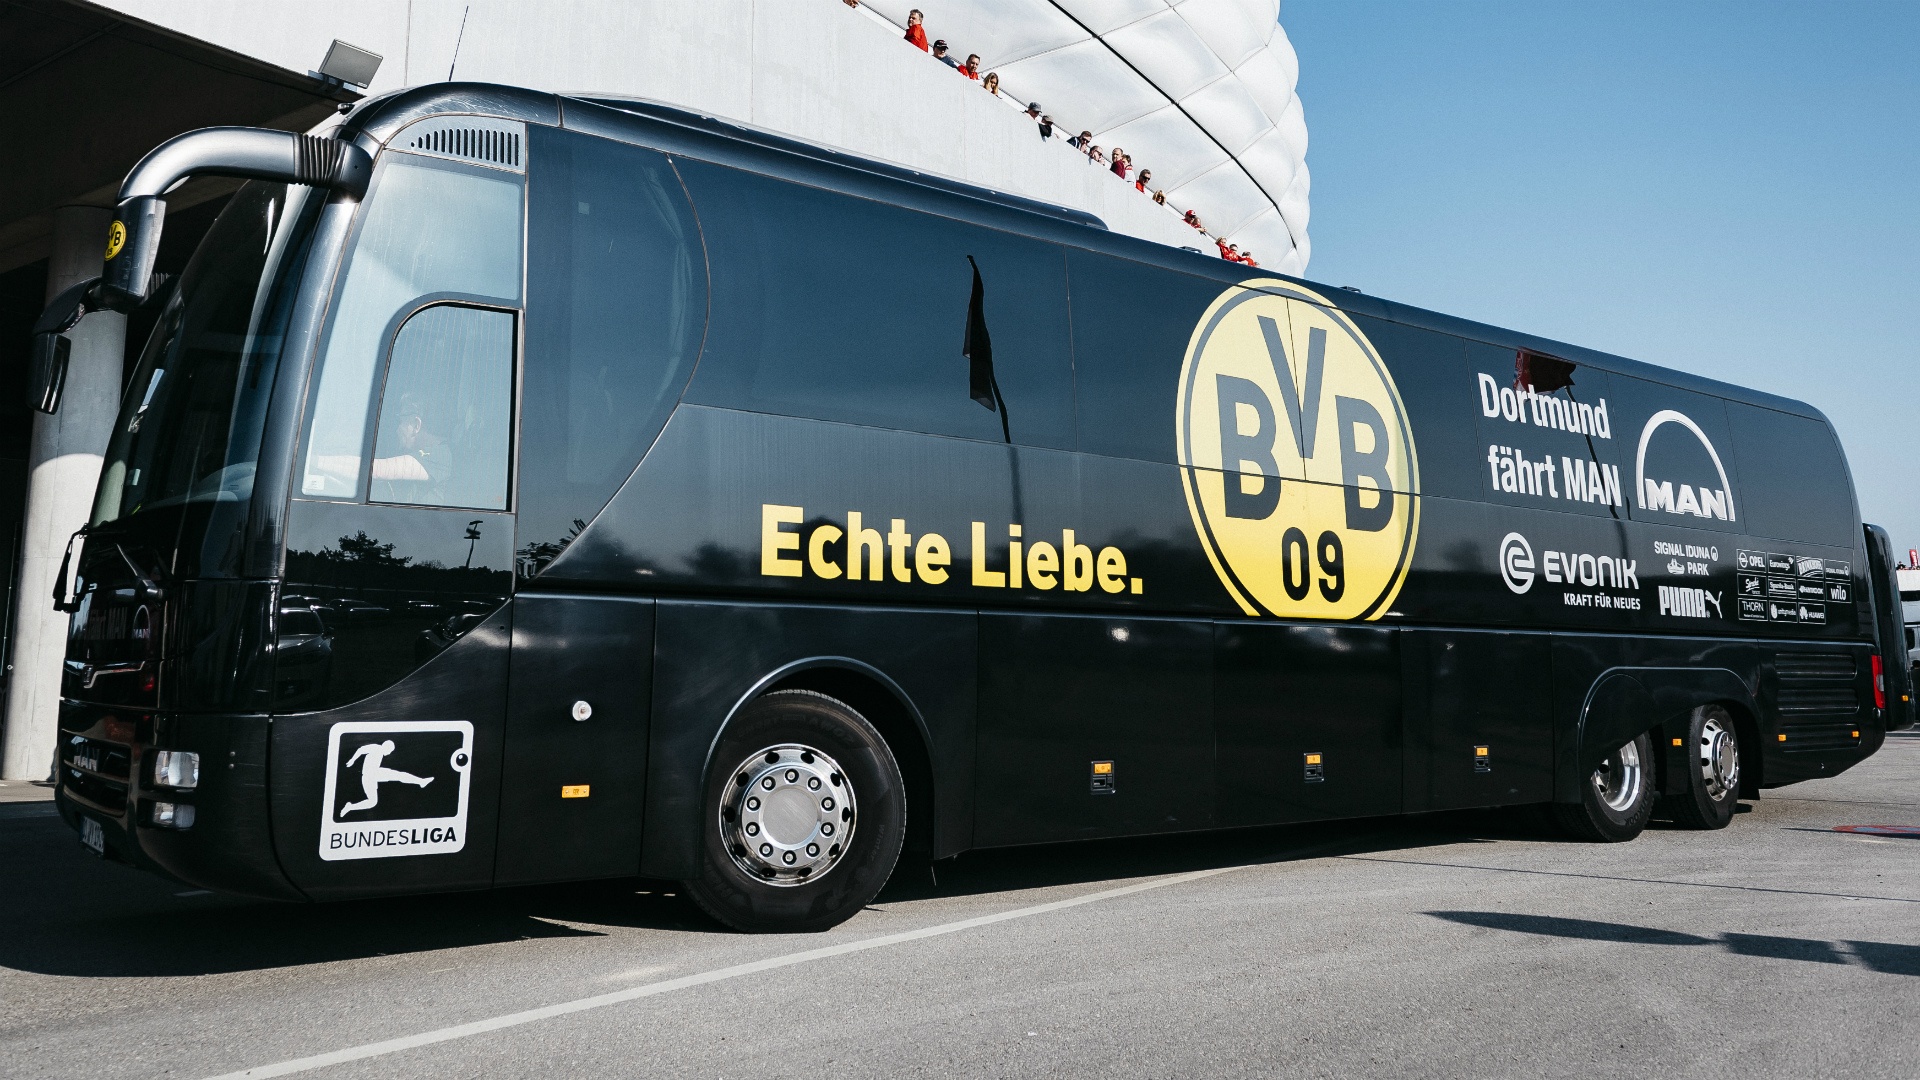 Ce que l'on sait des explosions près du bus du Borussia Dortmund